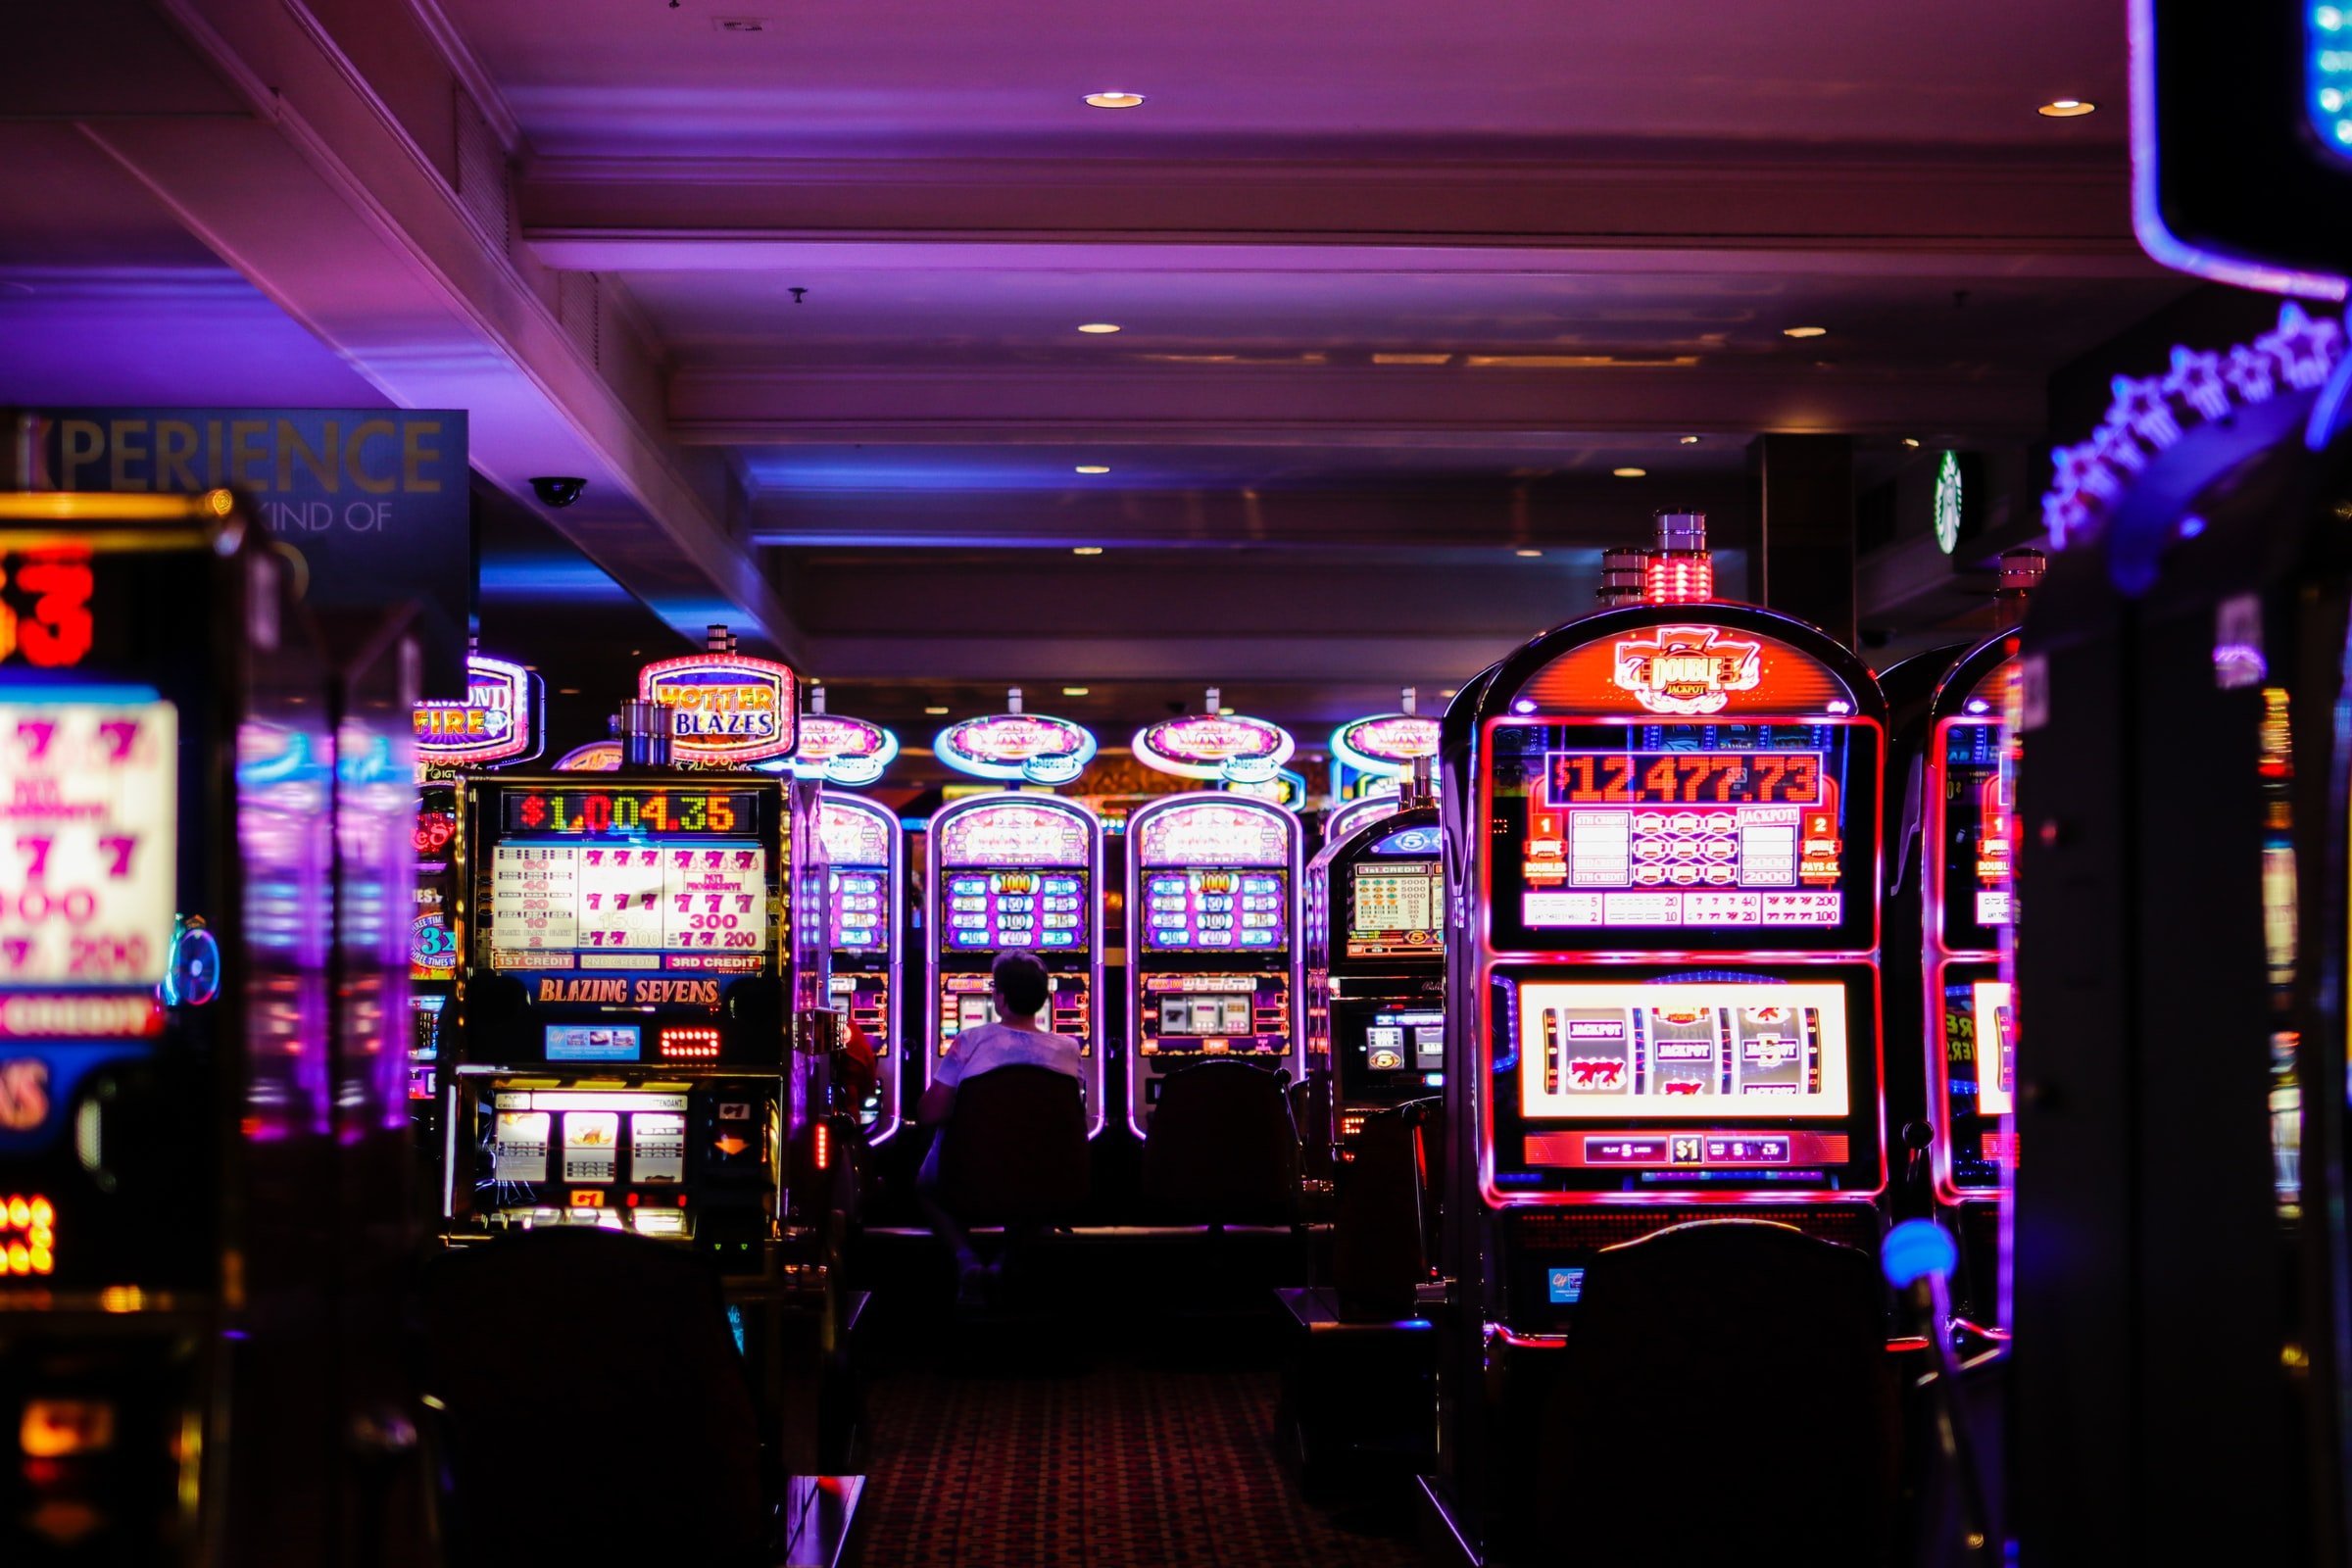 Spielautomaten im Casino im Neonlicht.